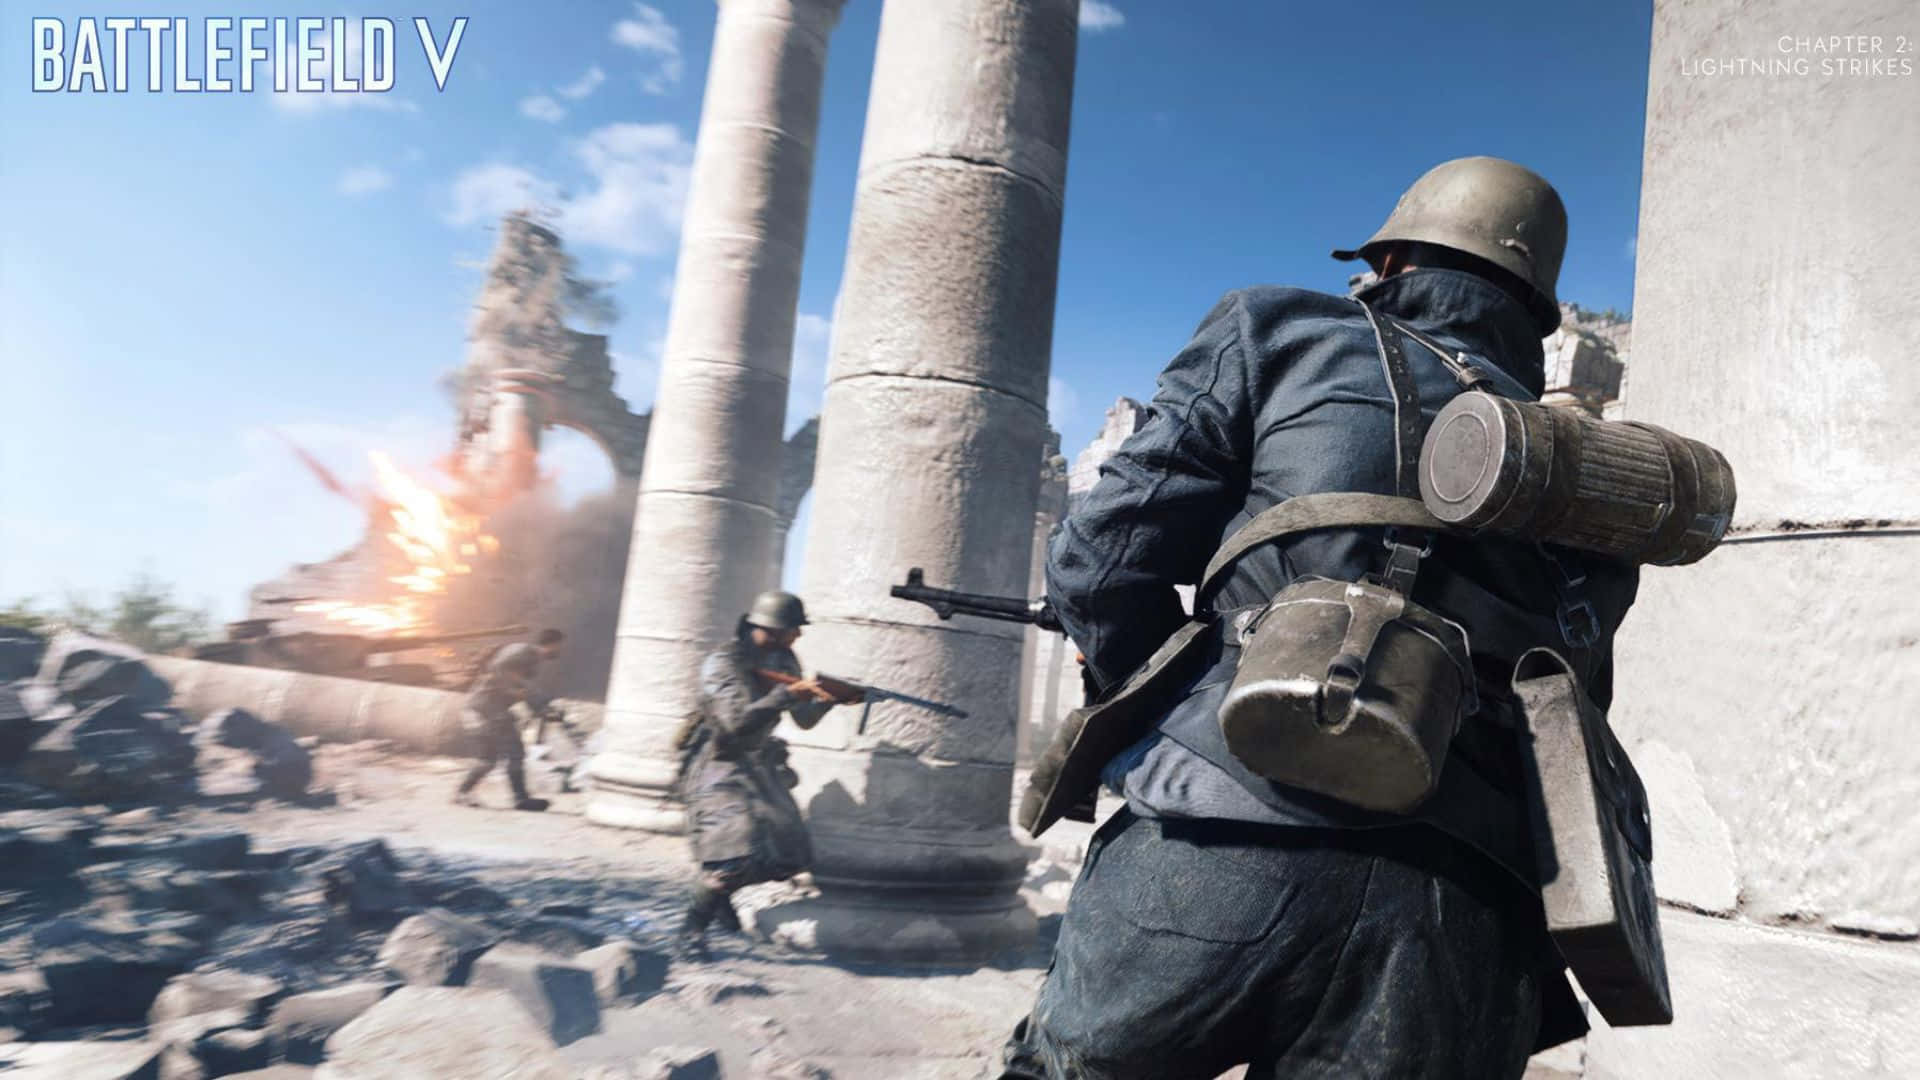 Image  Battlefield V in Stunning 1080p Resolution